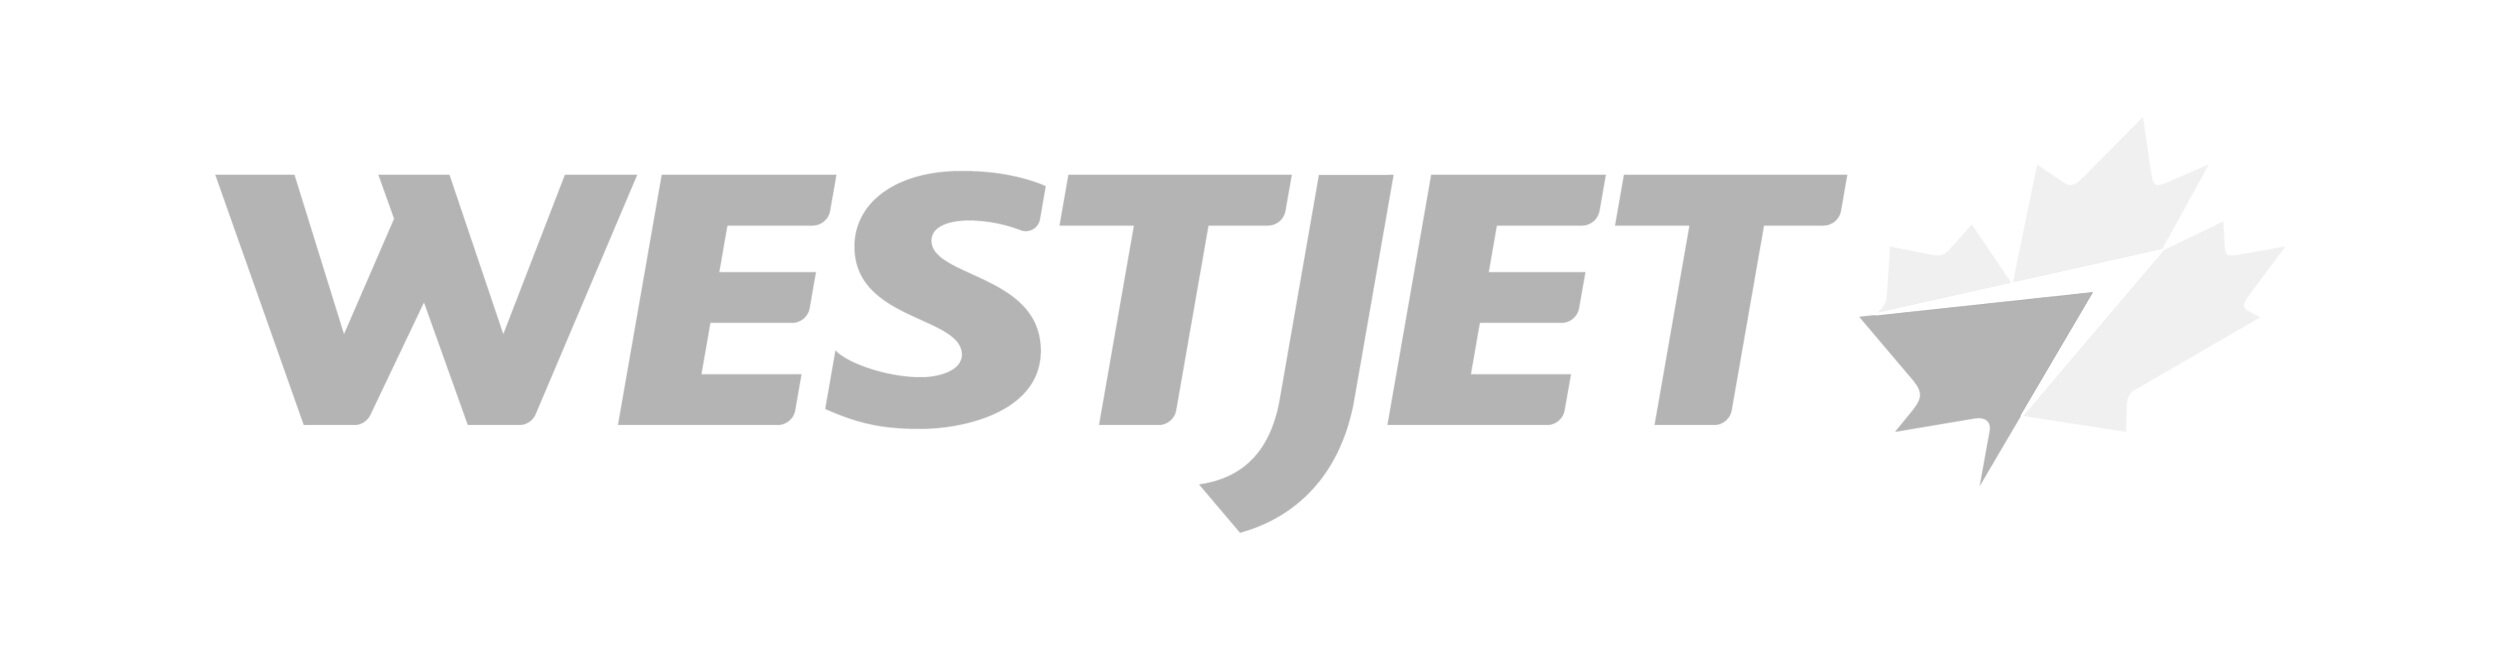 westjet+logo+transparent+.jpg